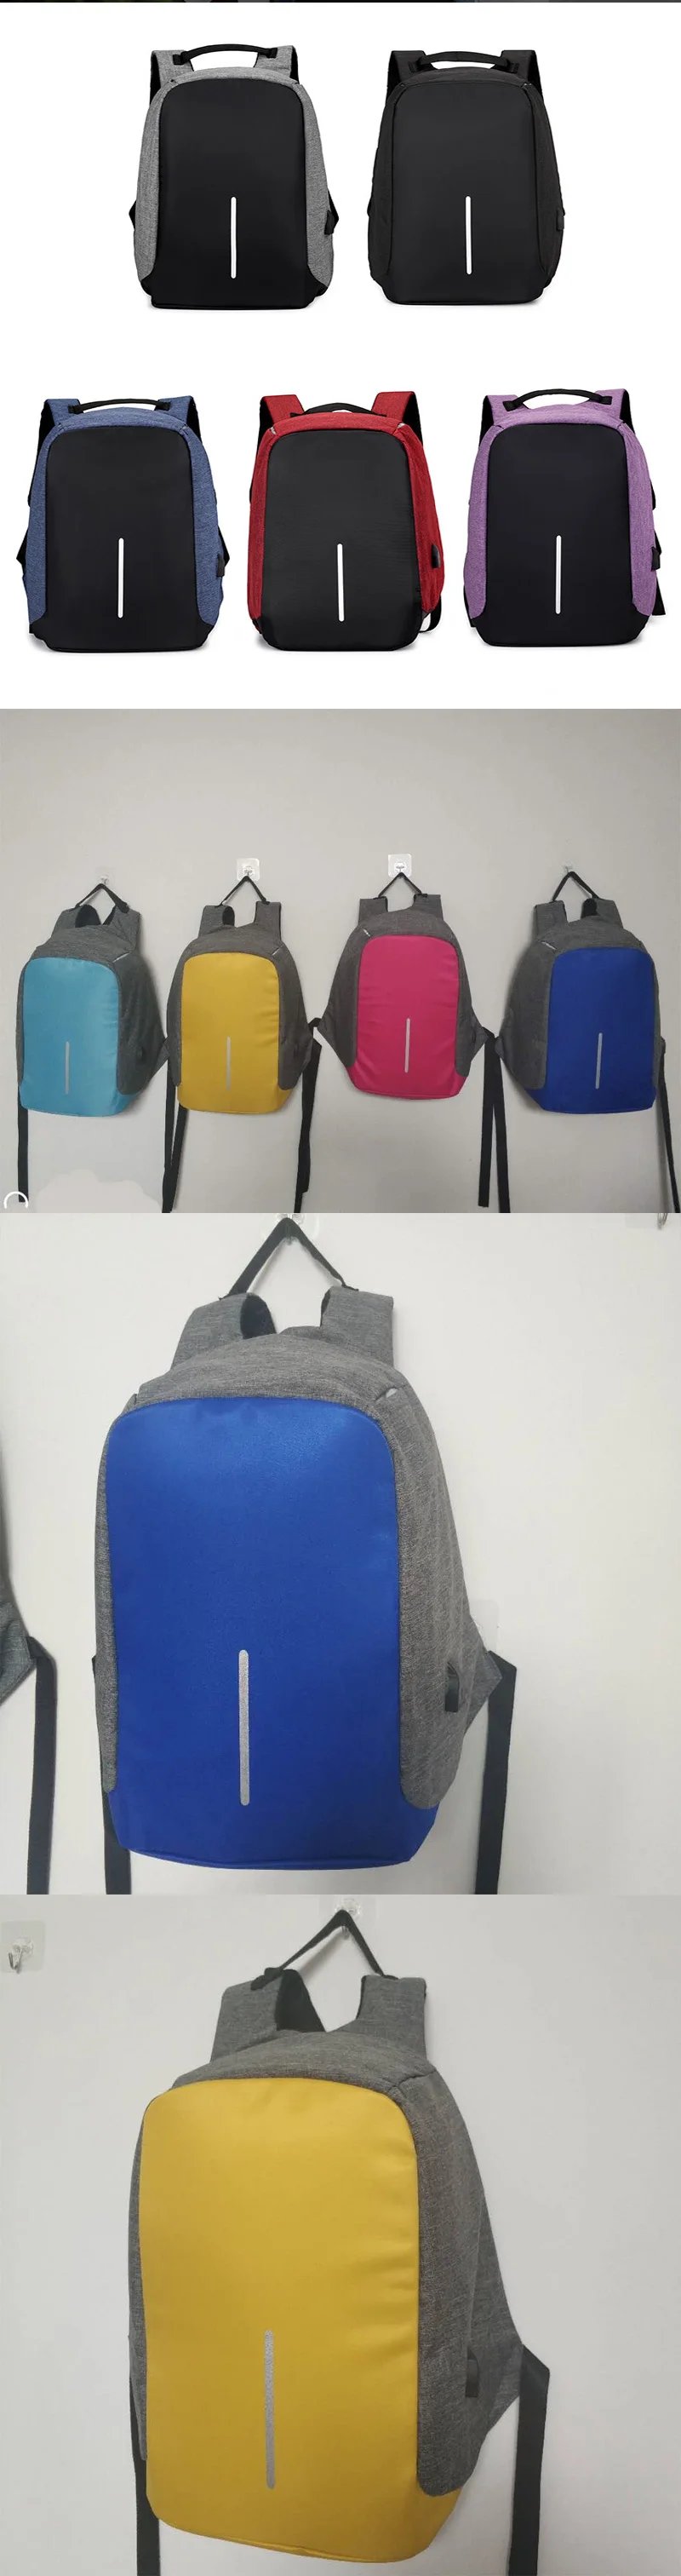 15,6 дюймовый рюкзак для ноутбука с usb зарядкой, рюкзак с защитой от кражи, мужской рюкзак для путешествий, водонепроницаемая школьная сумка, мужской рюкзак Mochila